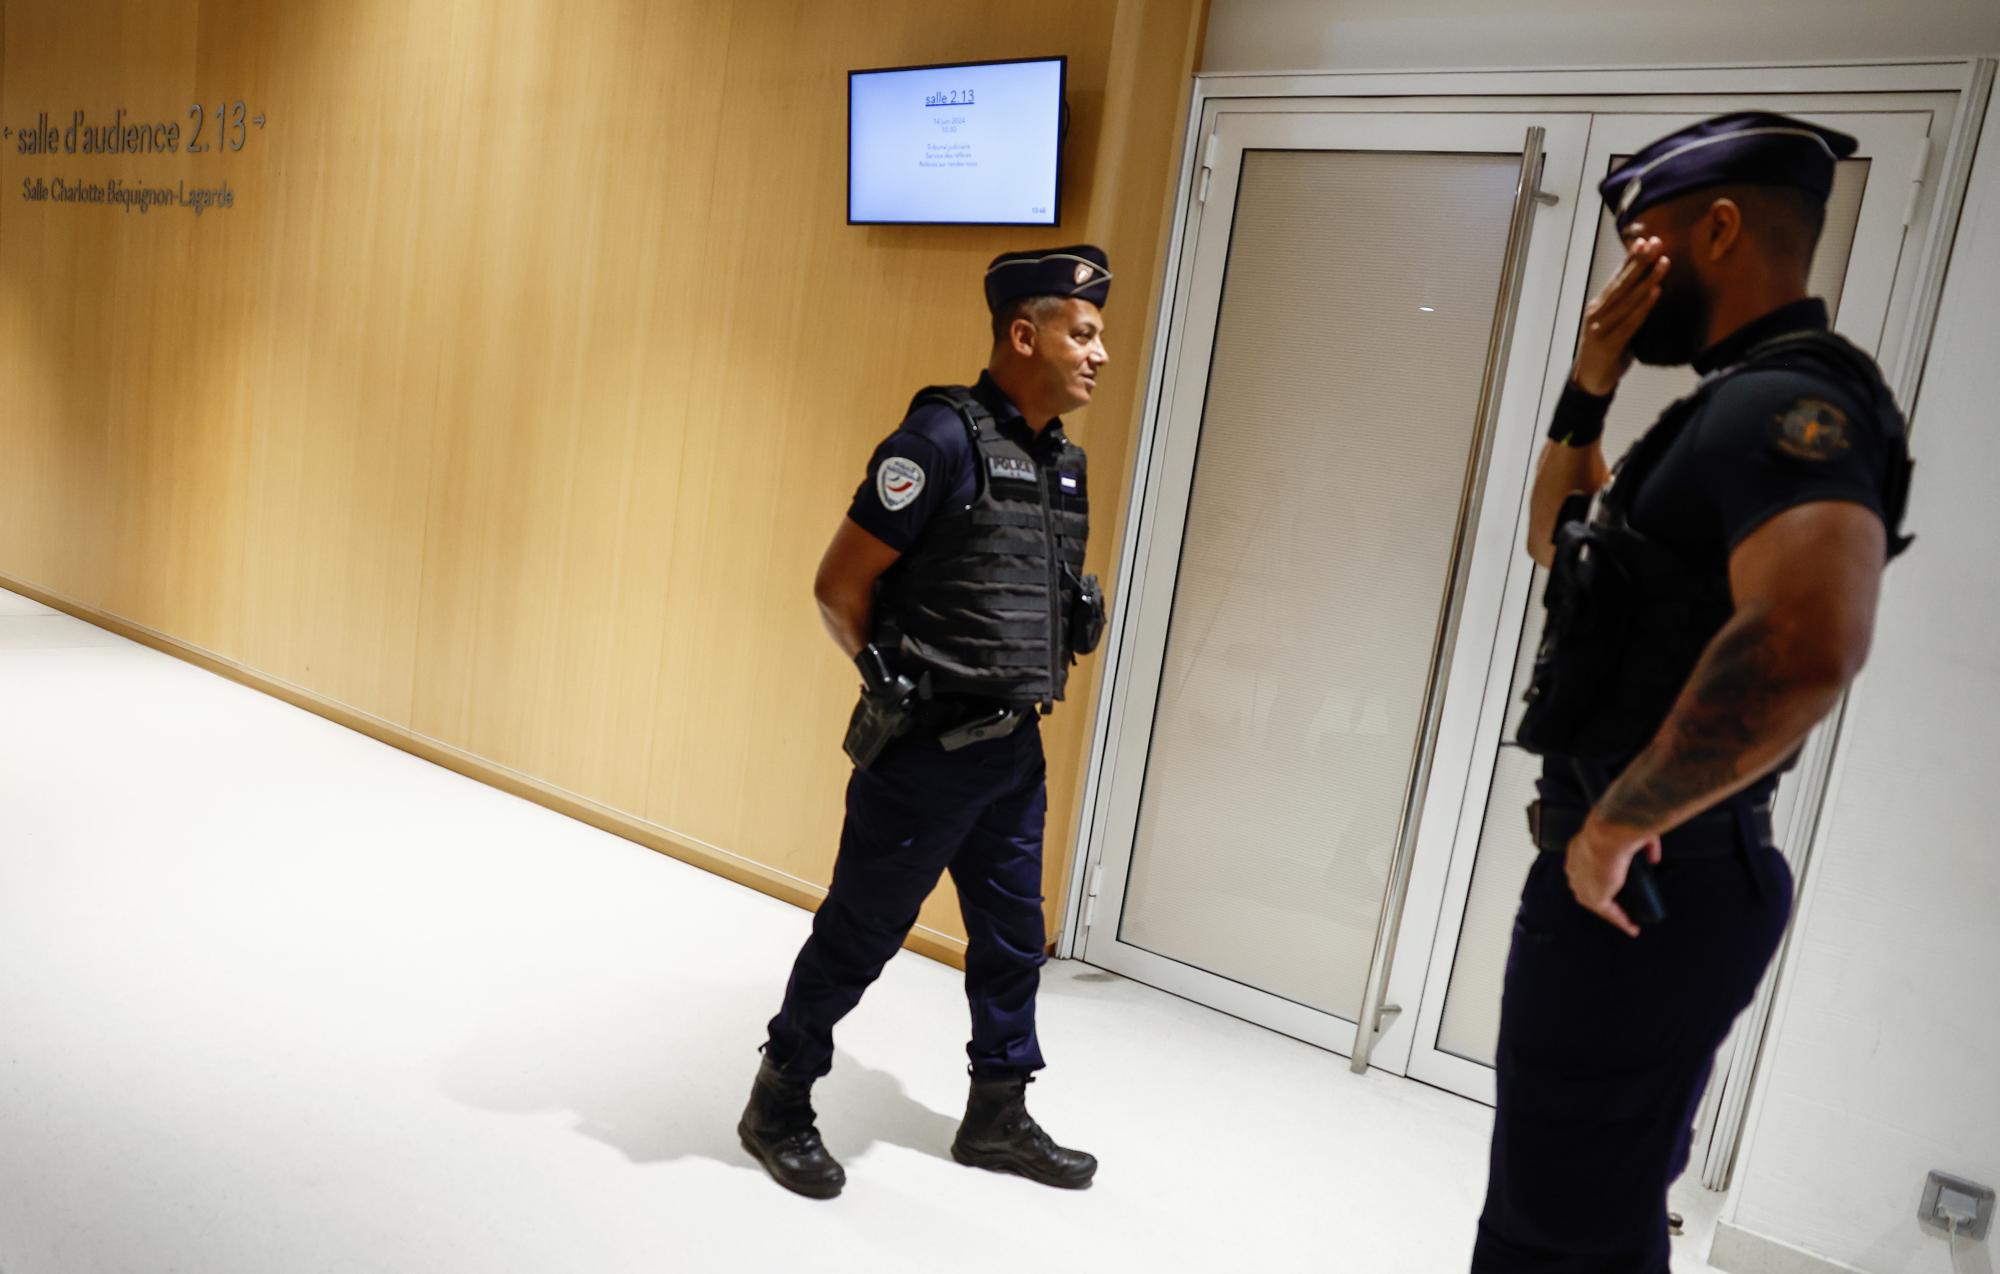 "Вързан и пребит до смърт": Намериха тялото на охранител в Париж, пазил сейф с пари